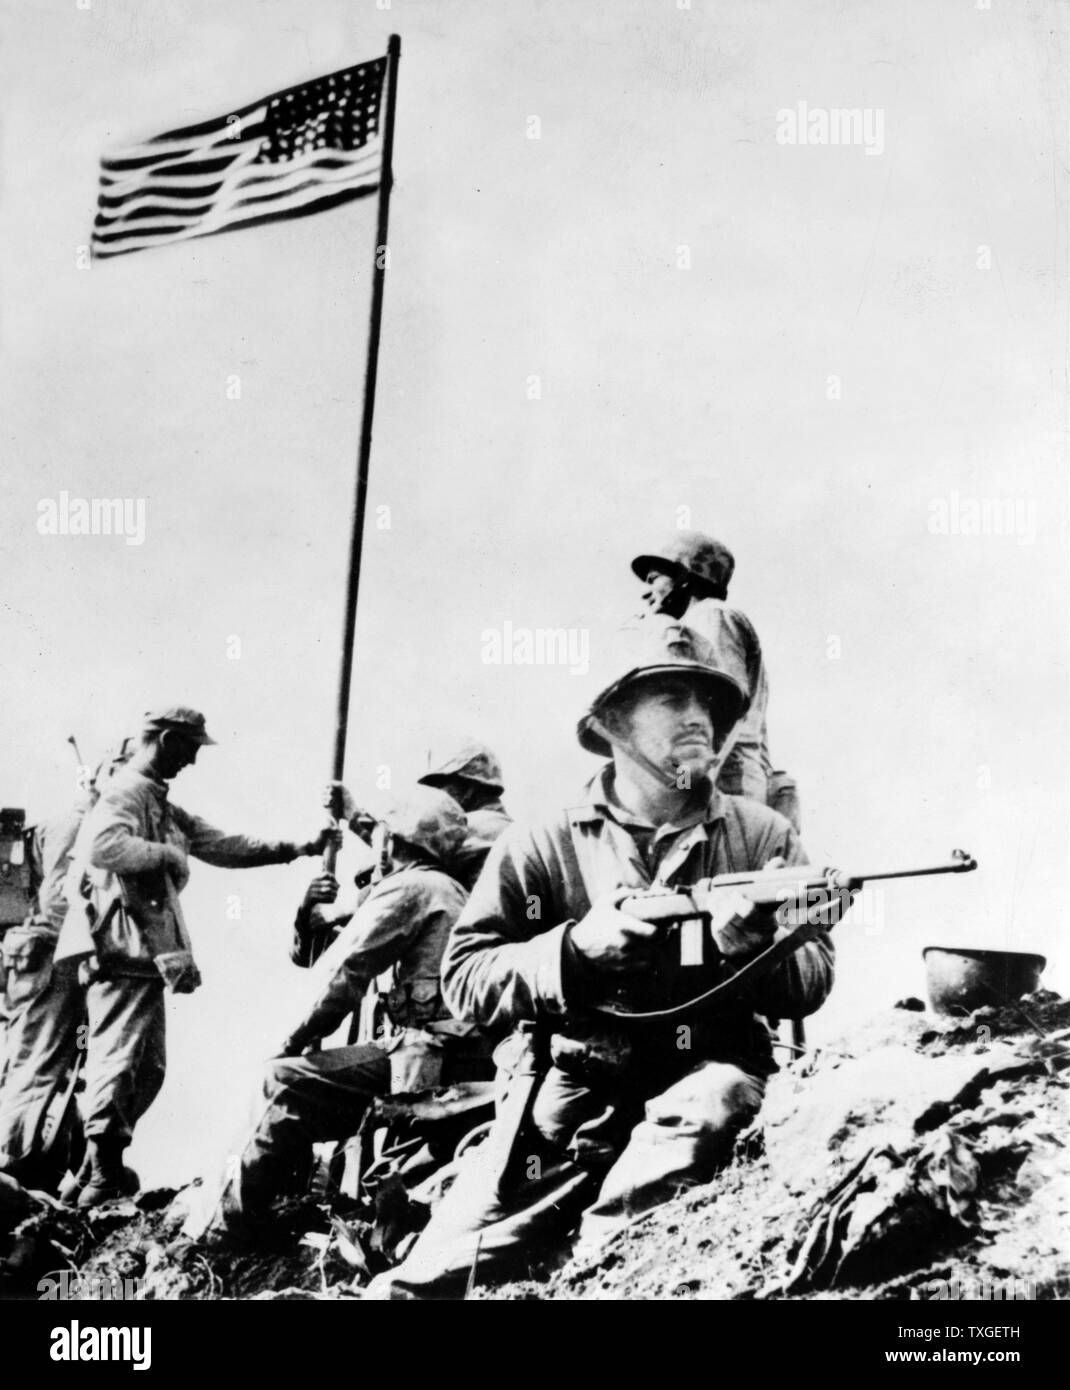 Premier drapeau situé au sommet du mont. Suribachi, 23 février 1945, au cours de la seconde guerre mondiale United States Marine Corps photo prise par le Sergent Louis R. LOWERY. Le mont Suribachi est une haute montagne 169 m à l'extrémité sud-ouest de l'île Iwo Jima. Banque D'Images